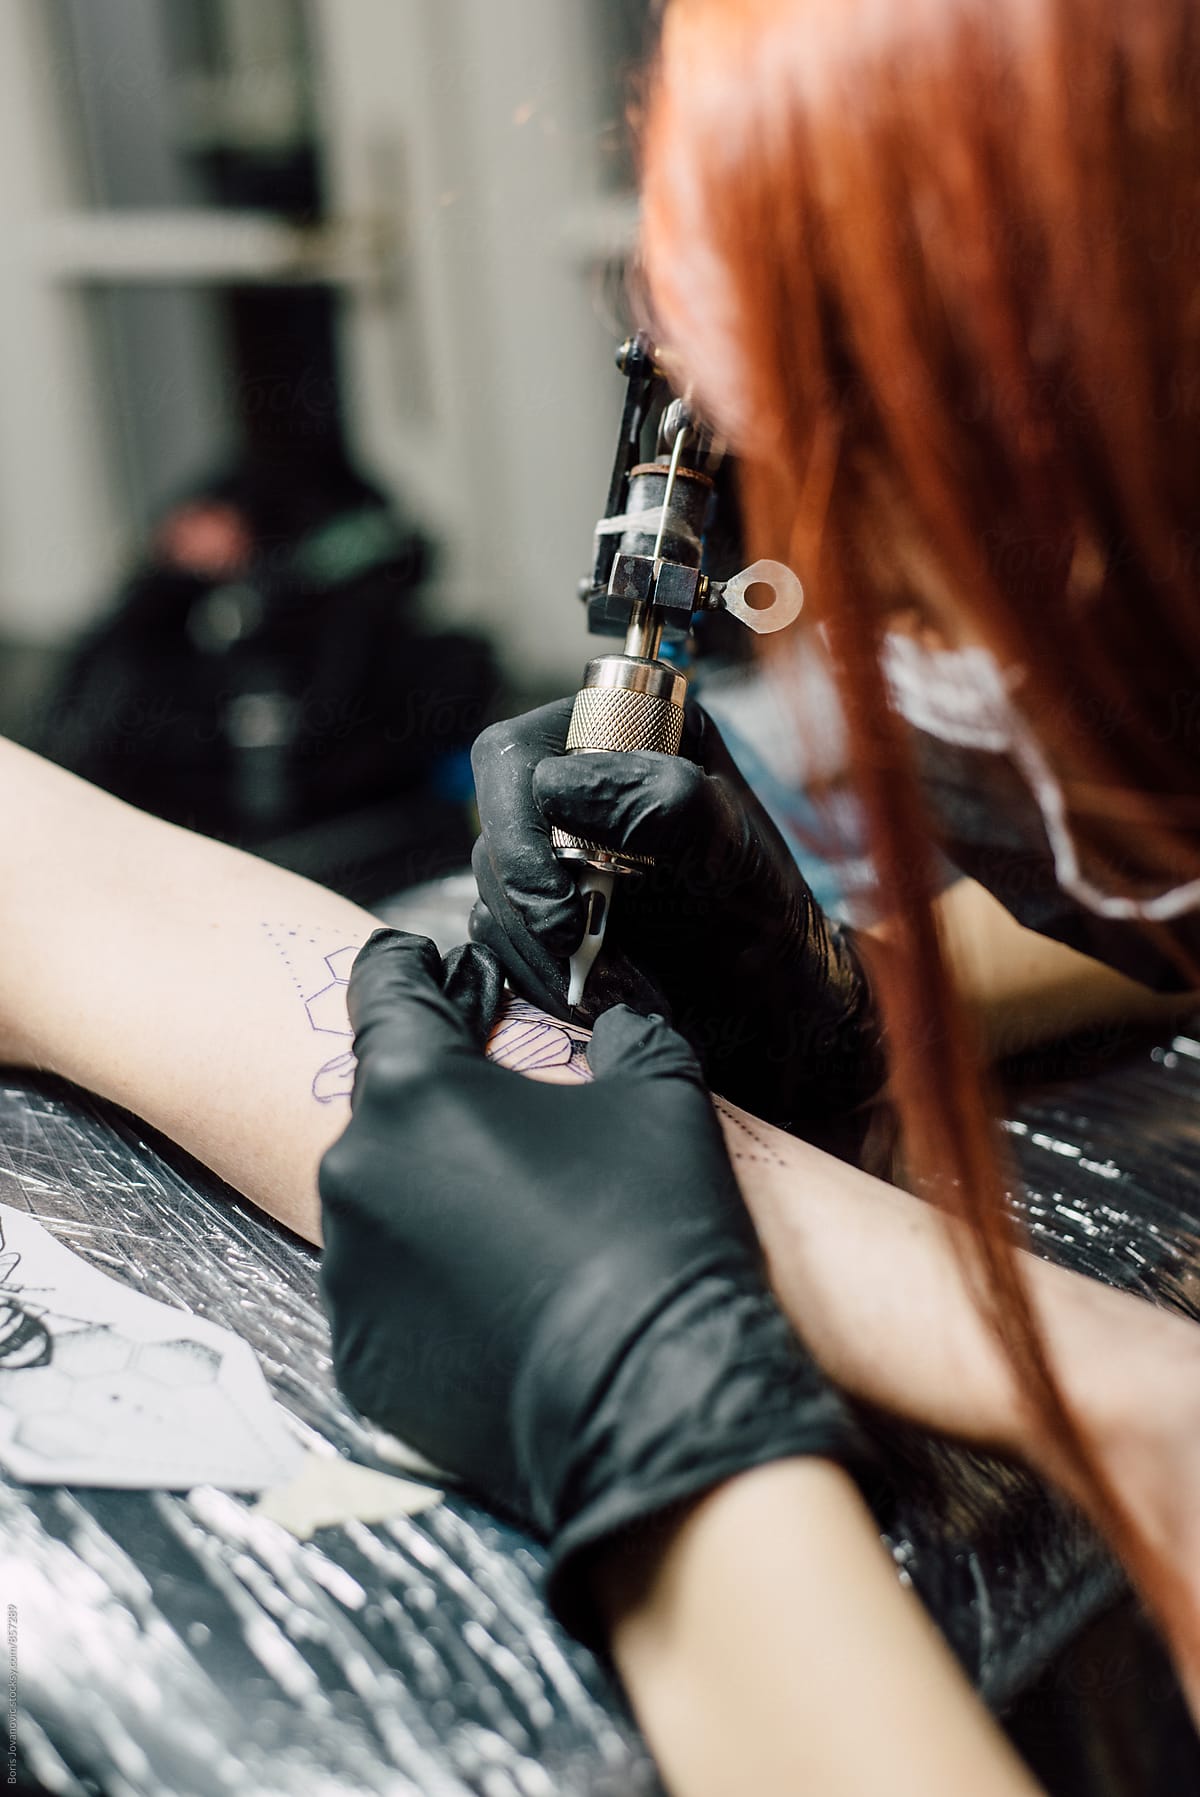 Tattoo artists doing a tattoo